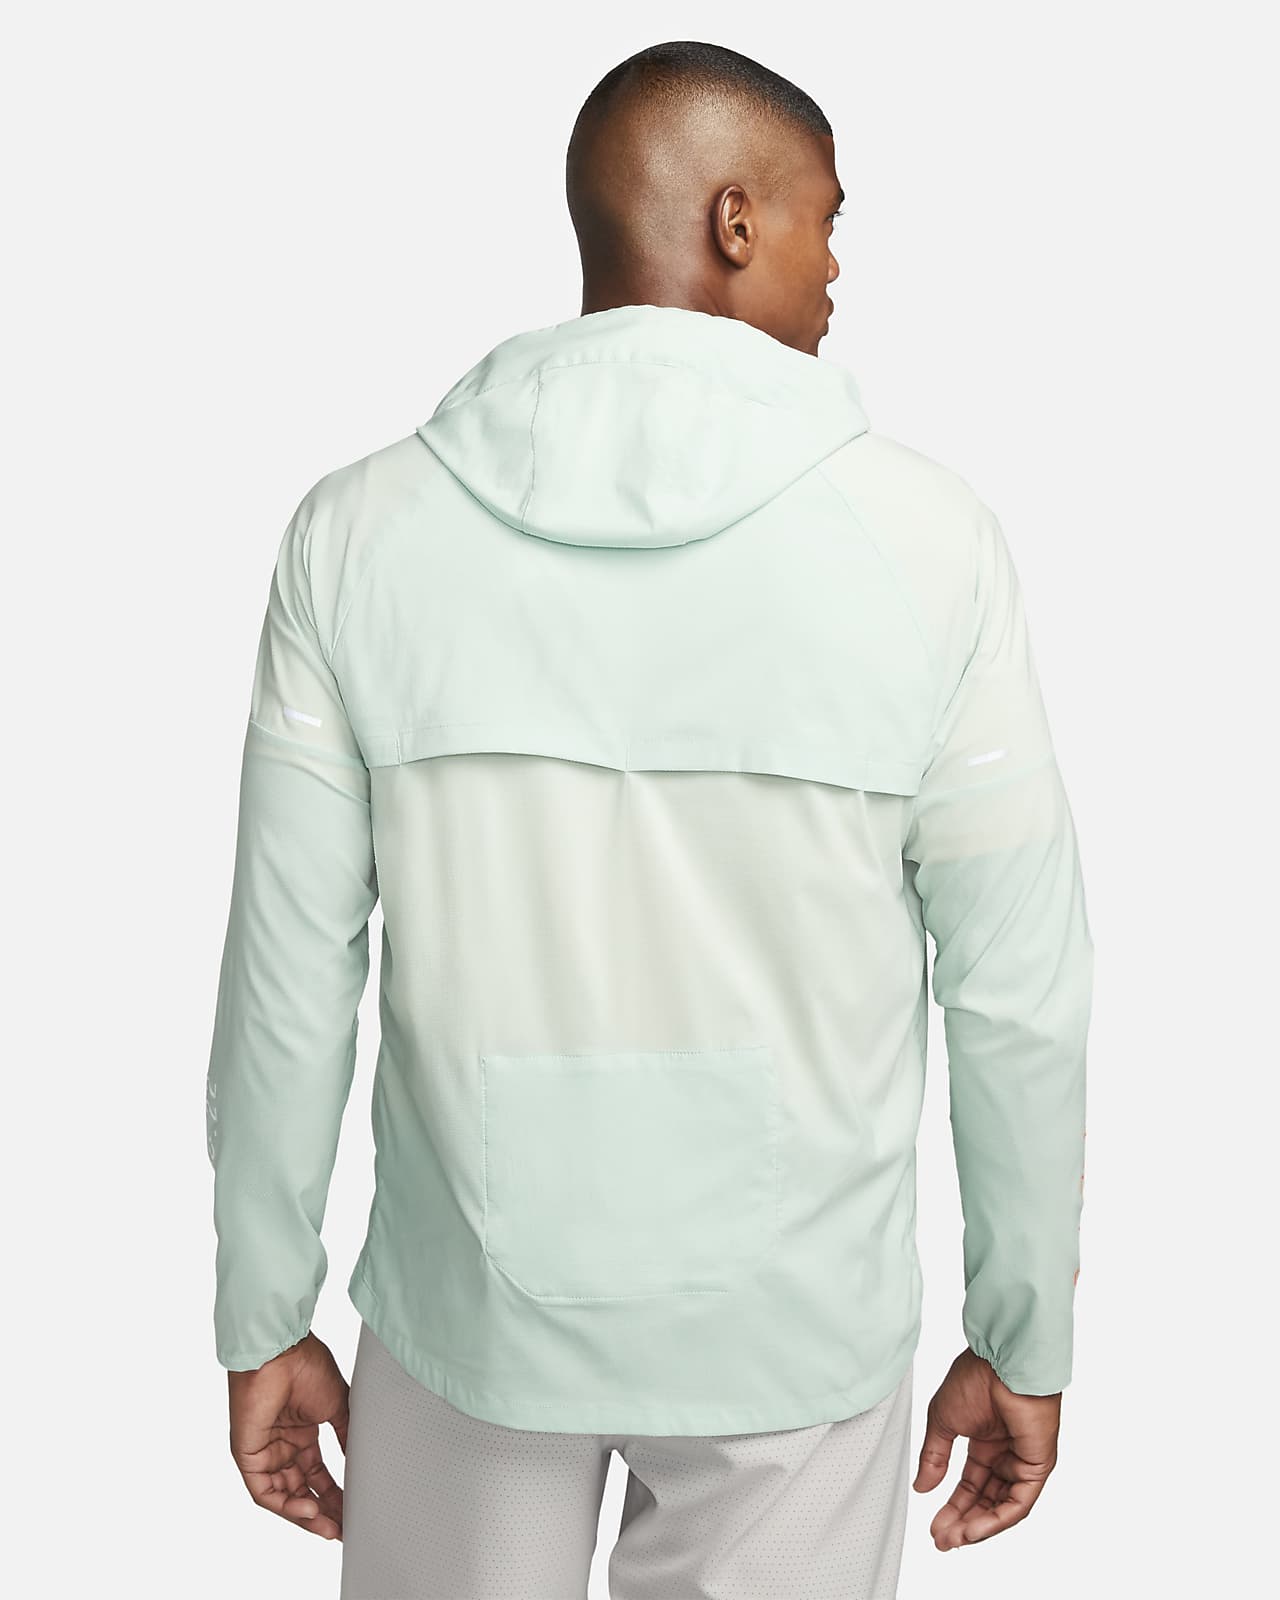 Nike Men's Repel Windrunner Jacket